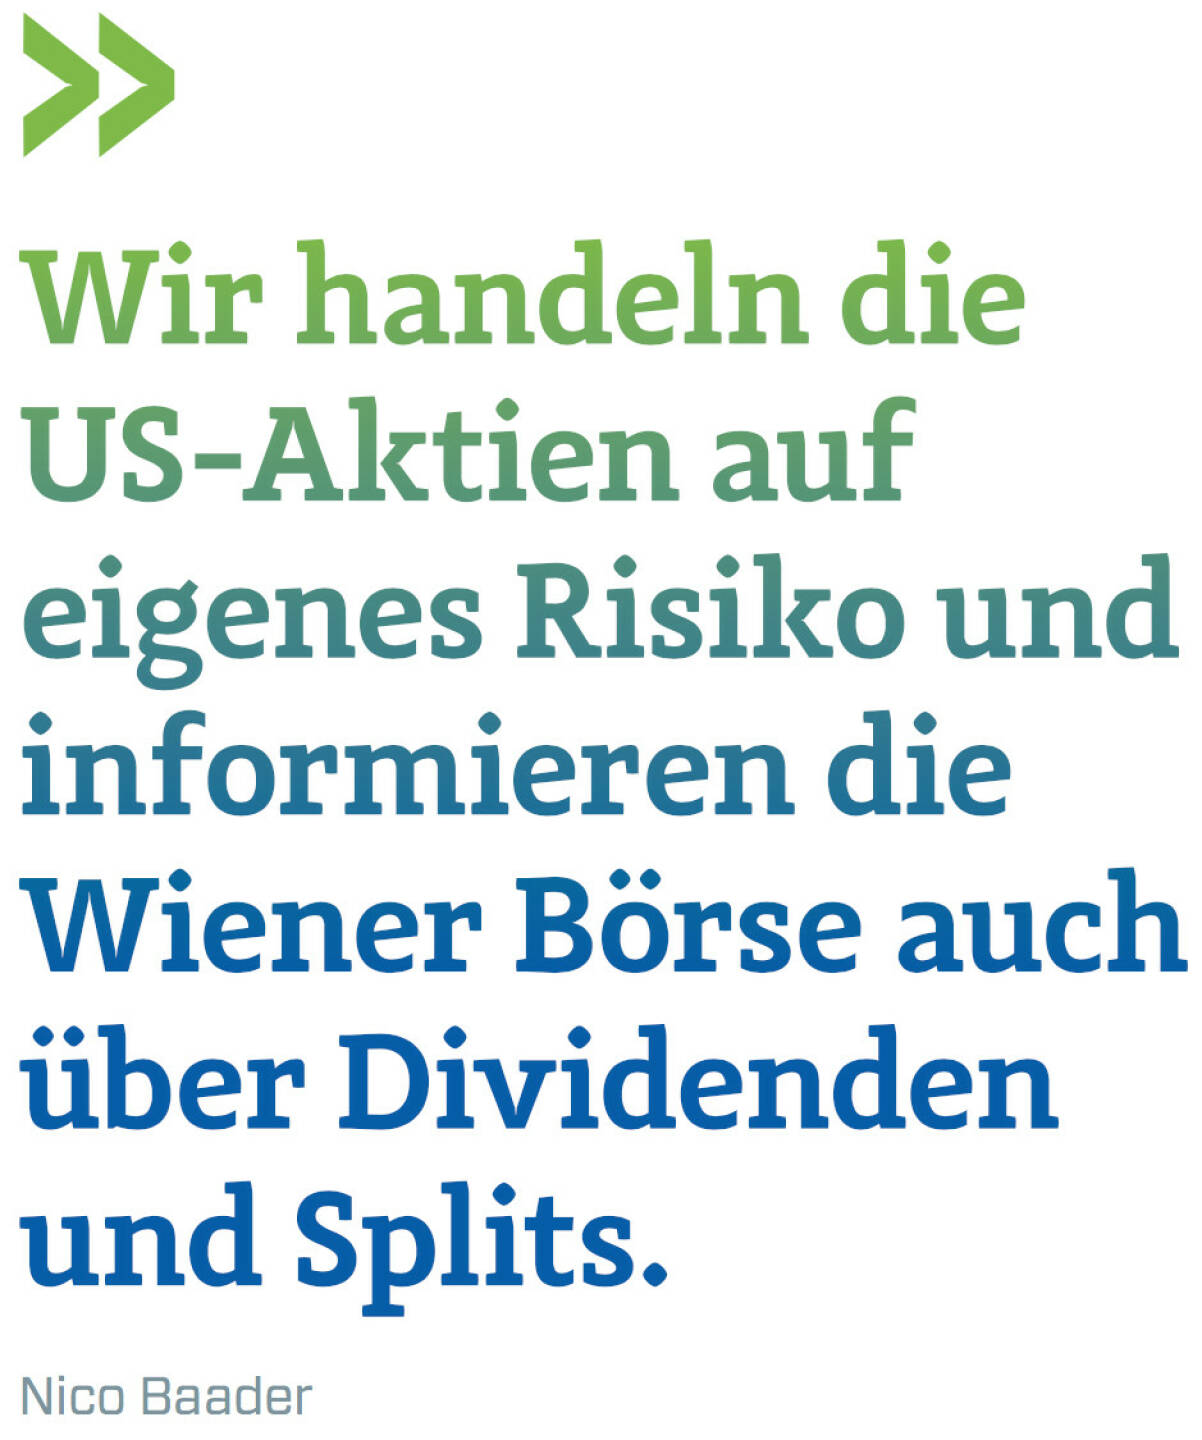 Wir handeln die US-Aktien auf eigenes Risiko und informieren die Wiener Börse auch über Dividenden und Splits. (Nico Baader, Baader Bank)